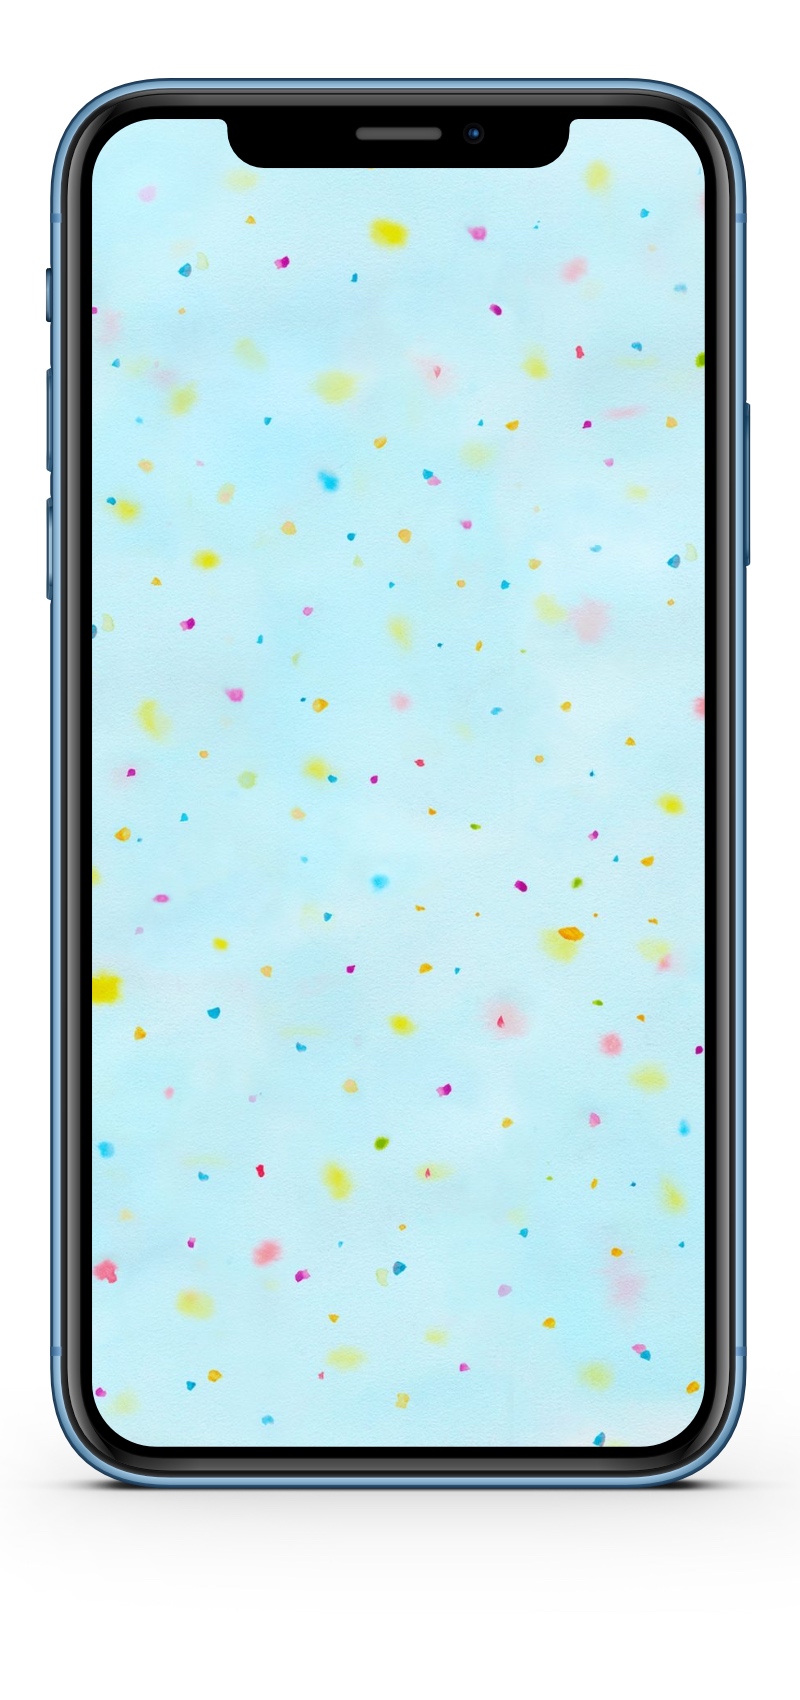 iPhone XR Wallpaper HD-Panorama